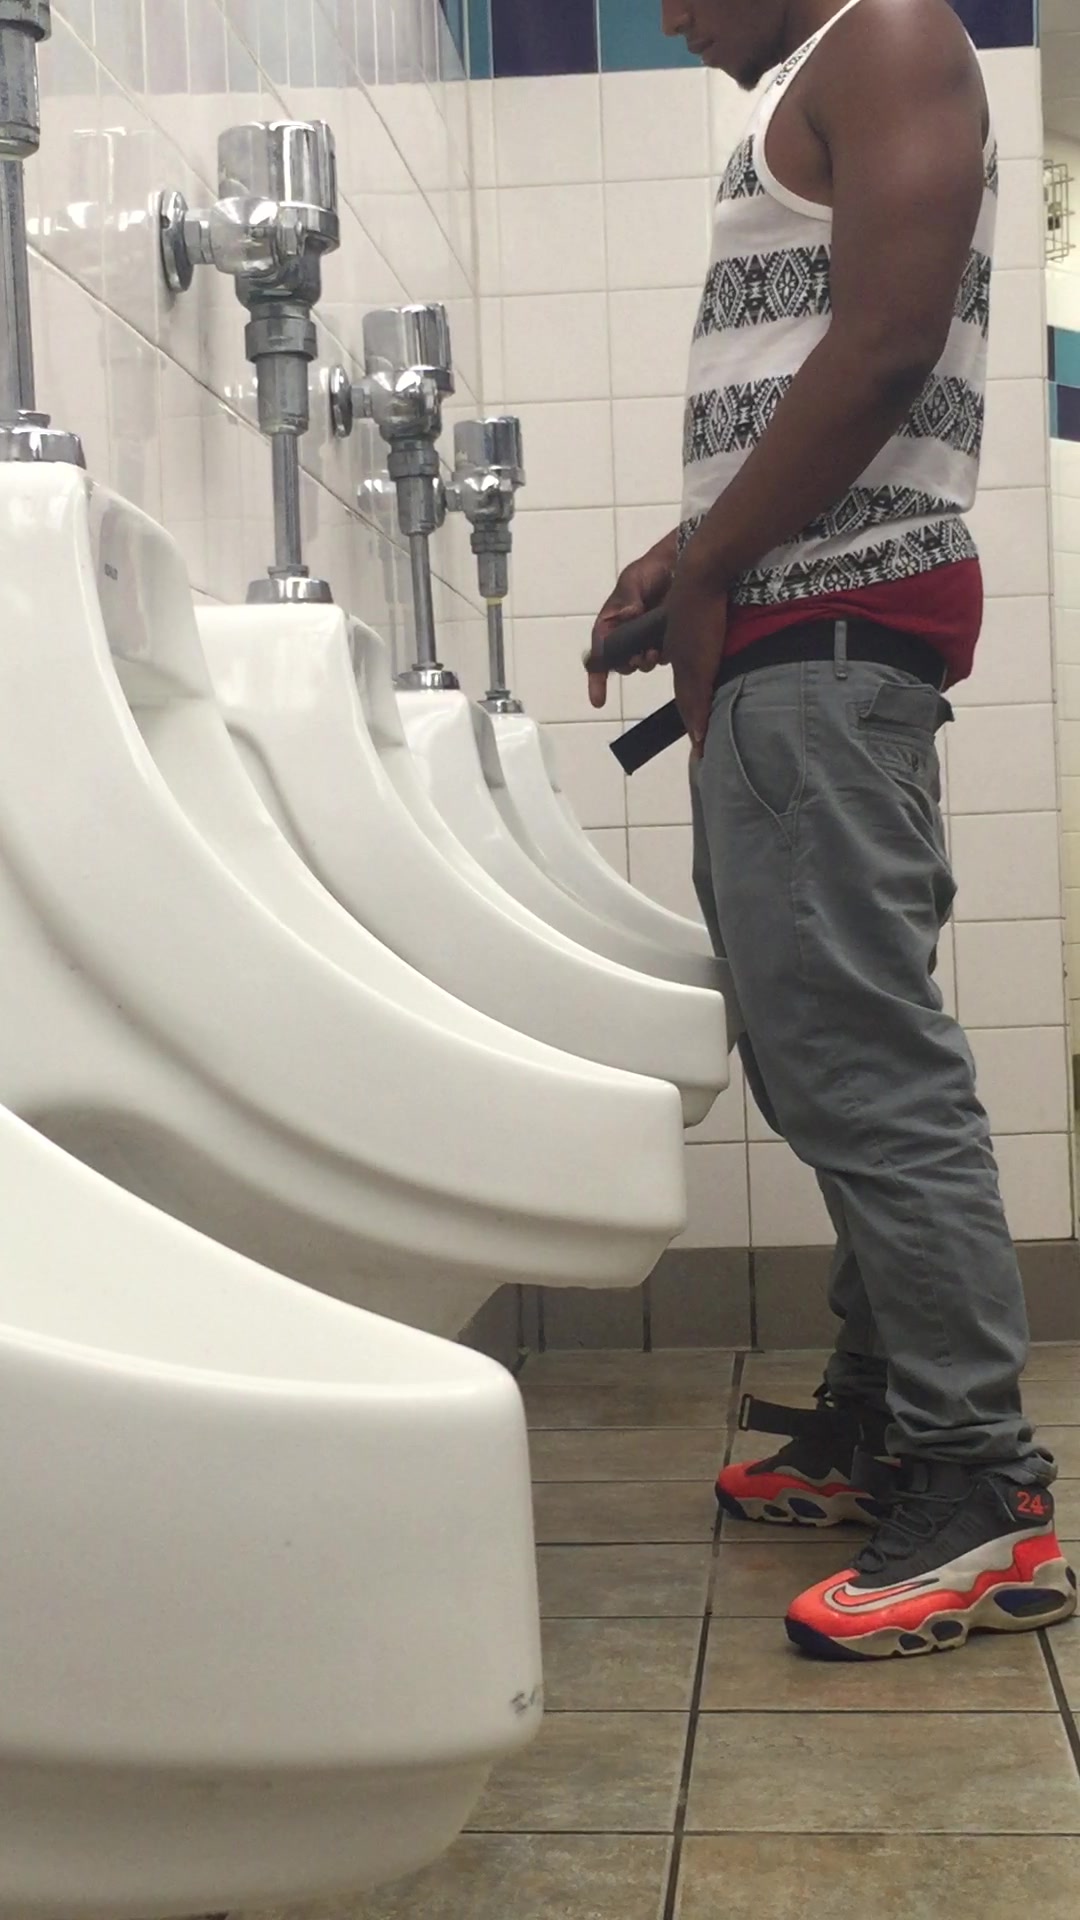 men bathroom urinal voyeur pics video Adult Pics Hq